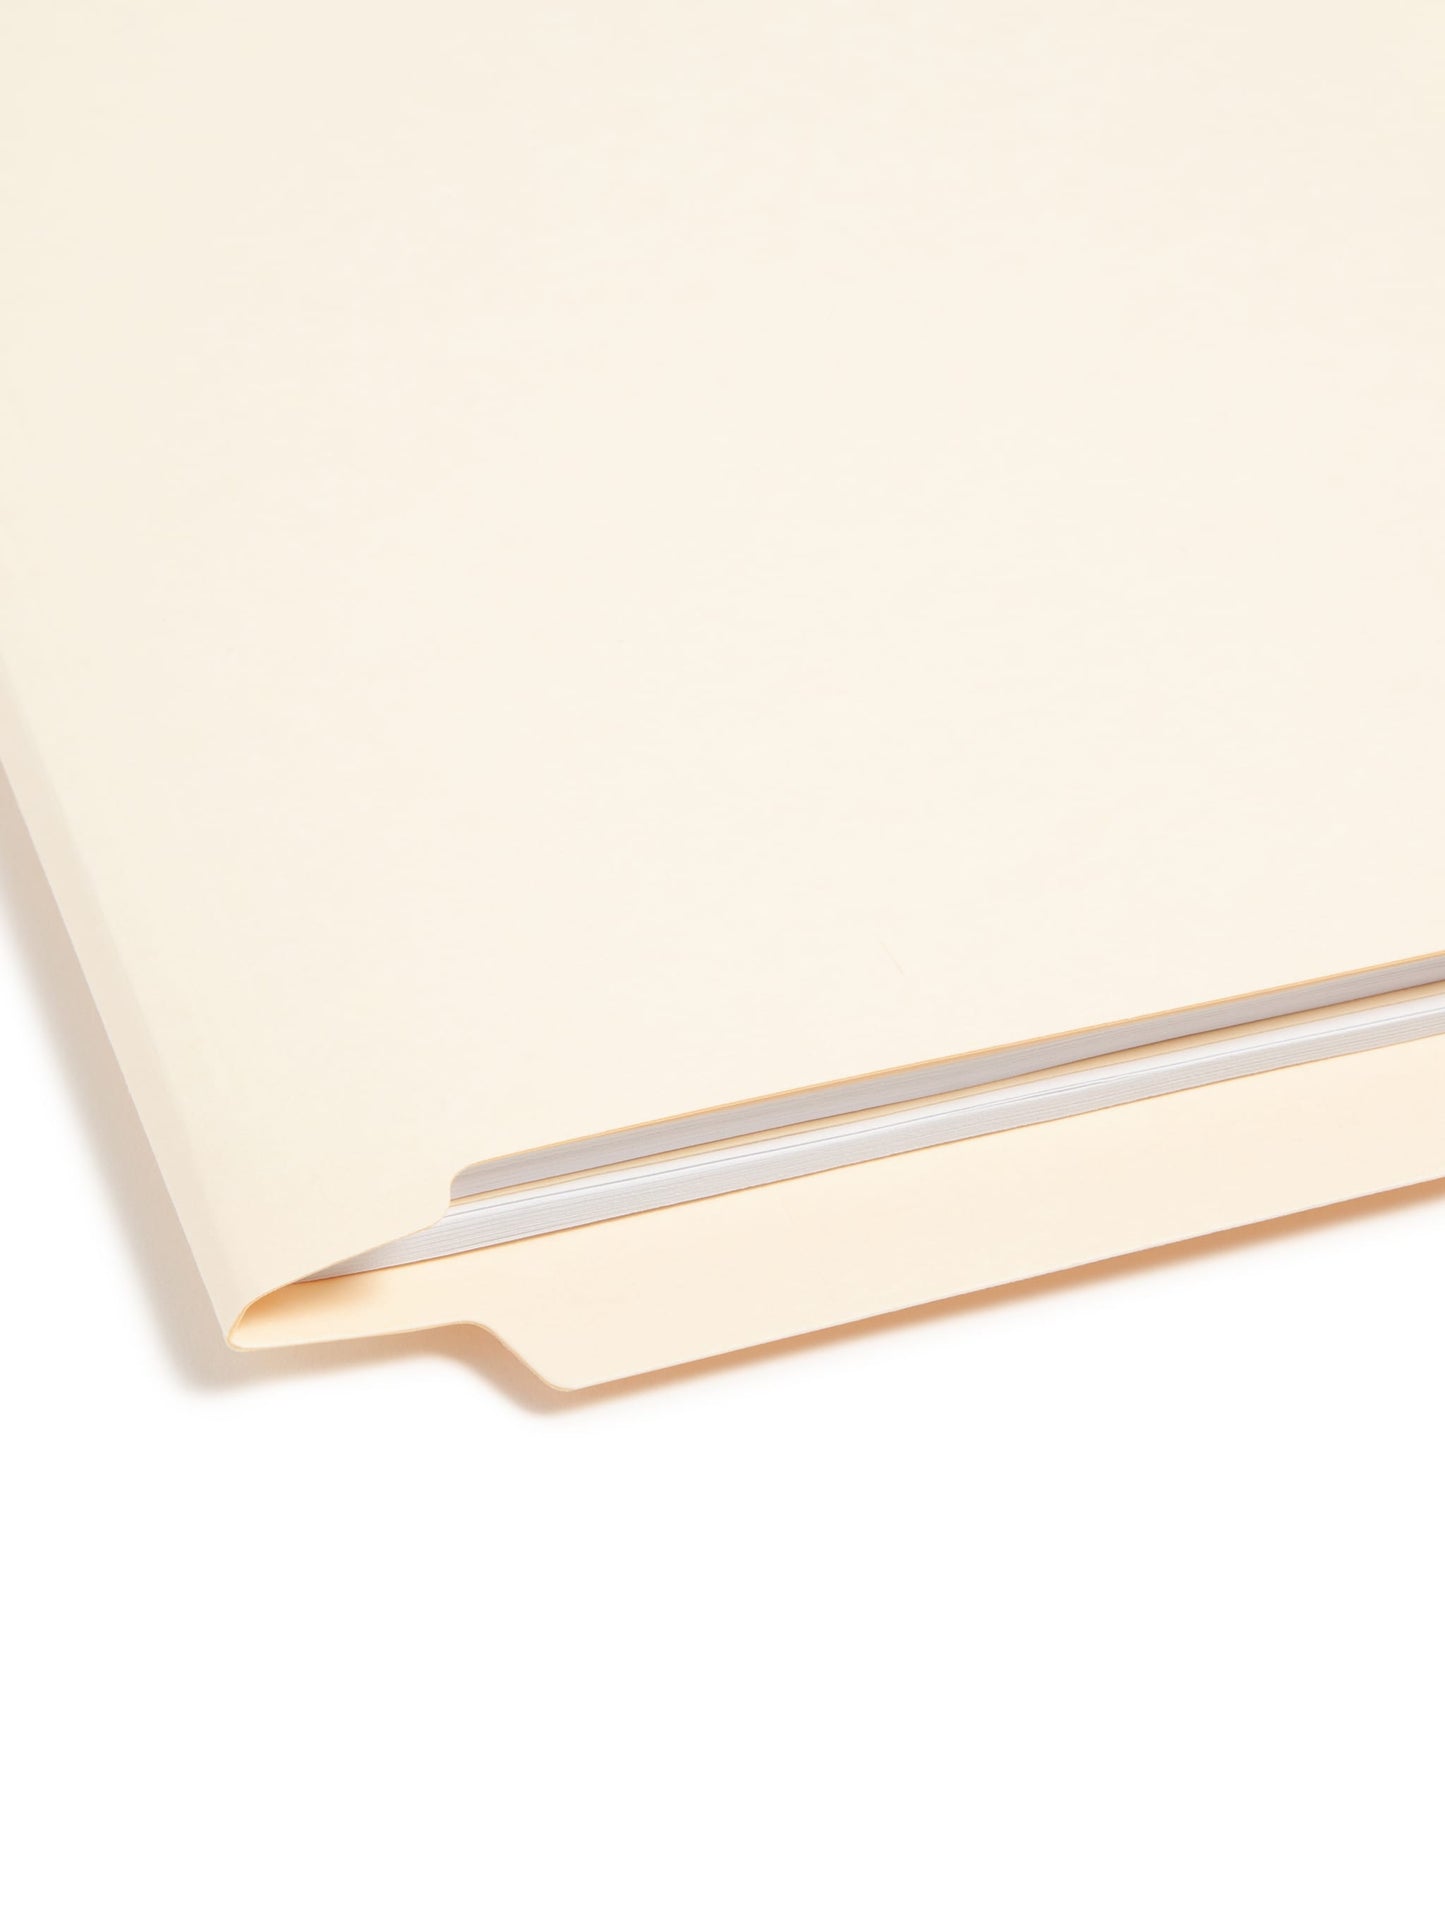 Shelf-Master® Reinforced End Tab Fastener File Folders, Straight-Cut Tab, 1 Divider, Manila Color, Letter Size, Set of 50, 086486342209